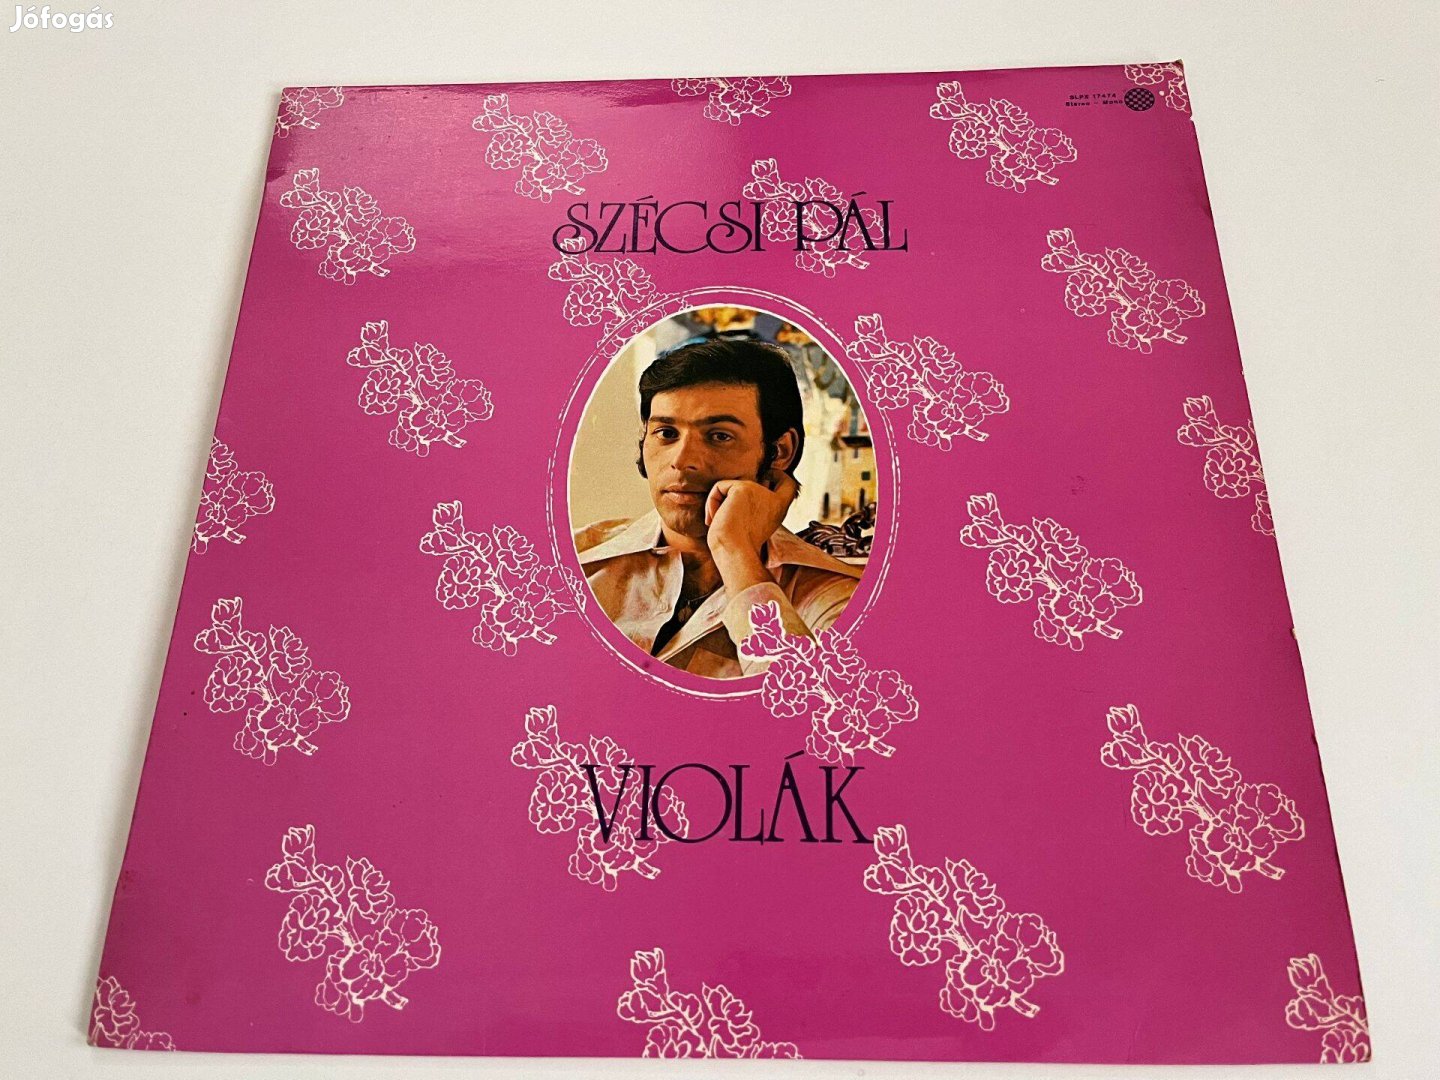 Szécsi Pál: Violák bakelit, vinyl, LP